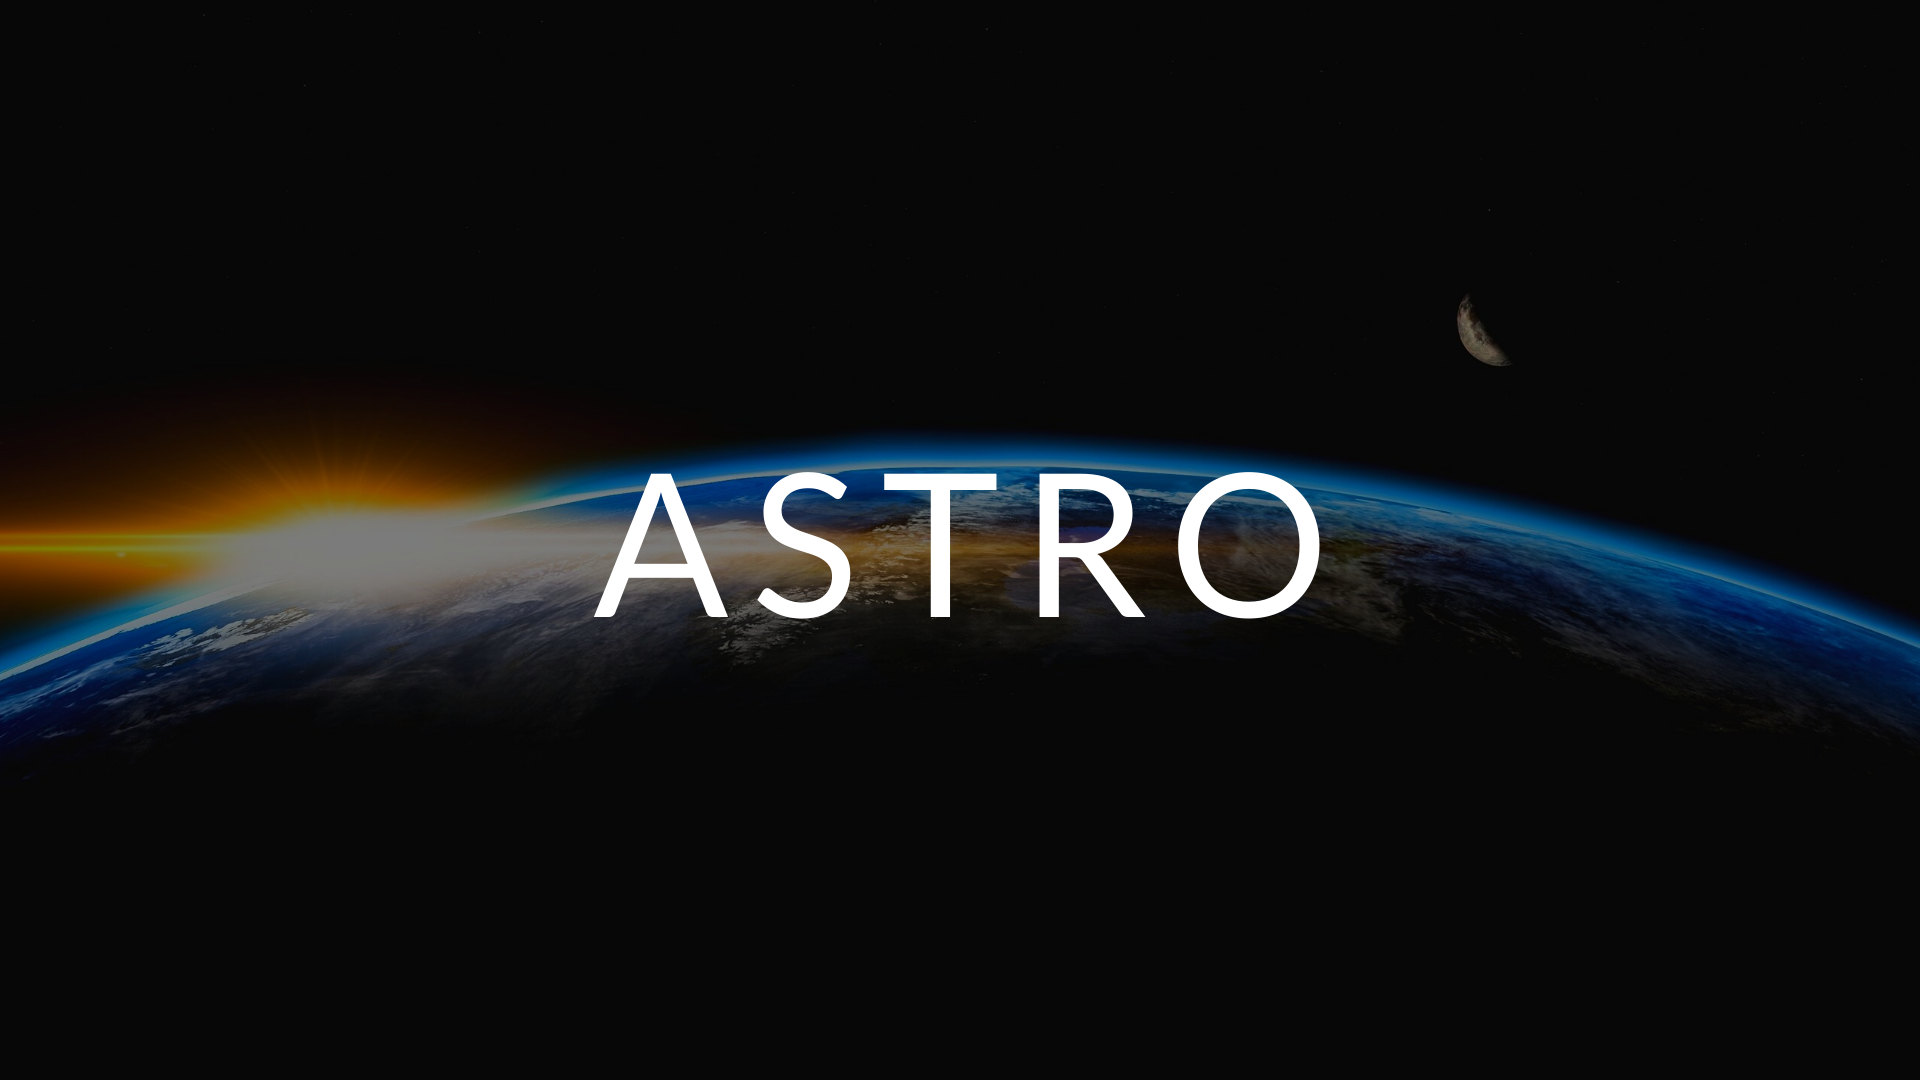 Astro - 1. Overview & Intro Hero Image